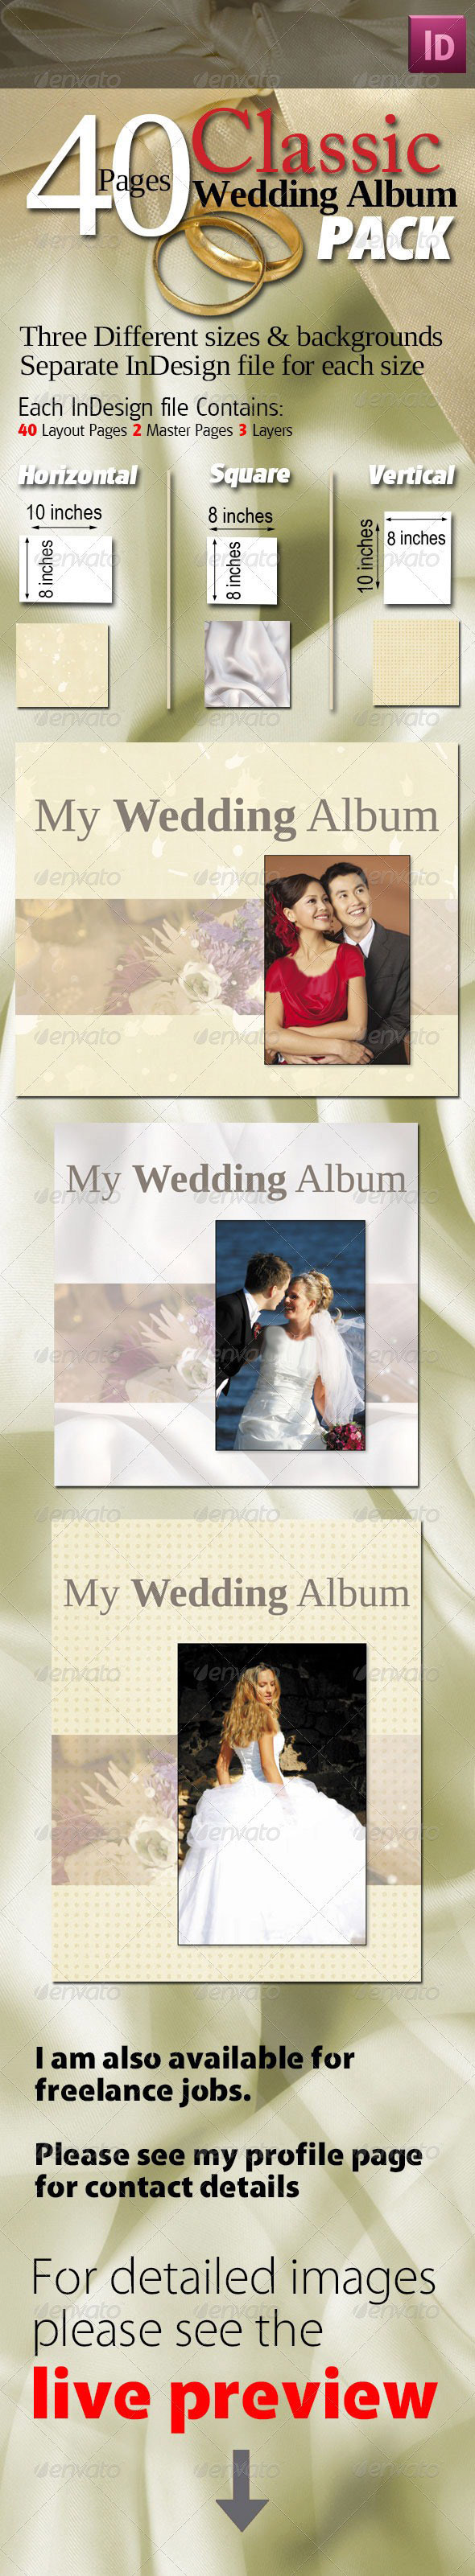 مجموعه 40 صفحه ای آلبوم های کلاسیک عروسی 